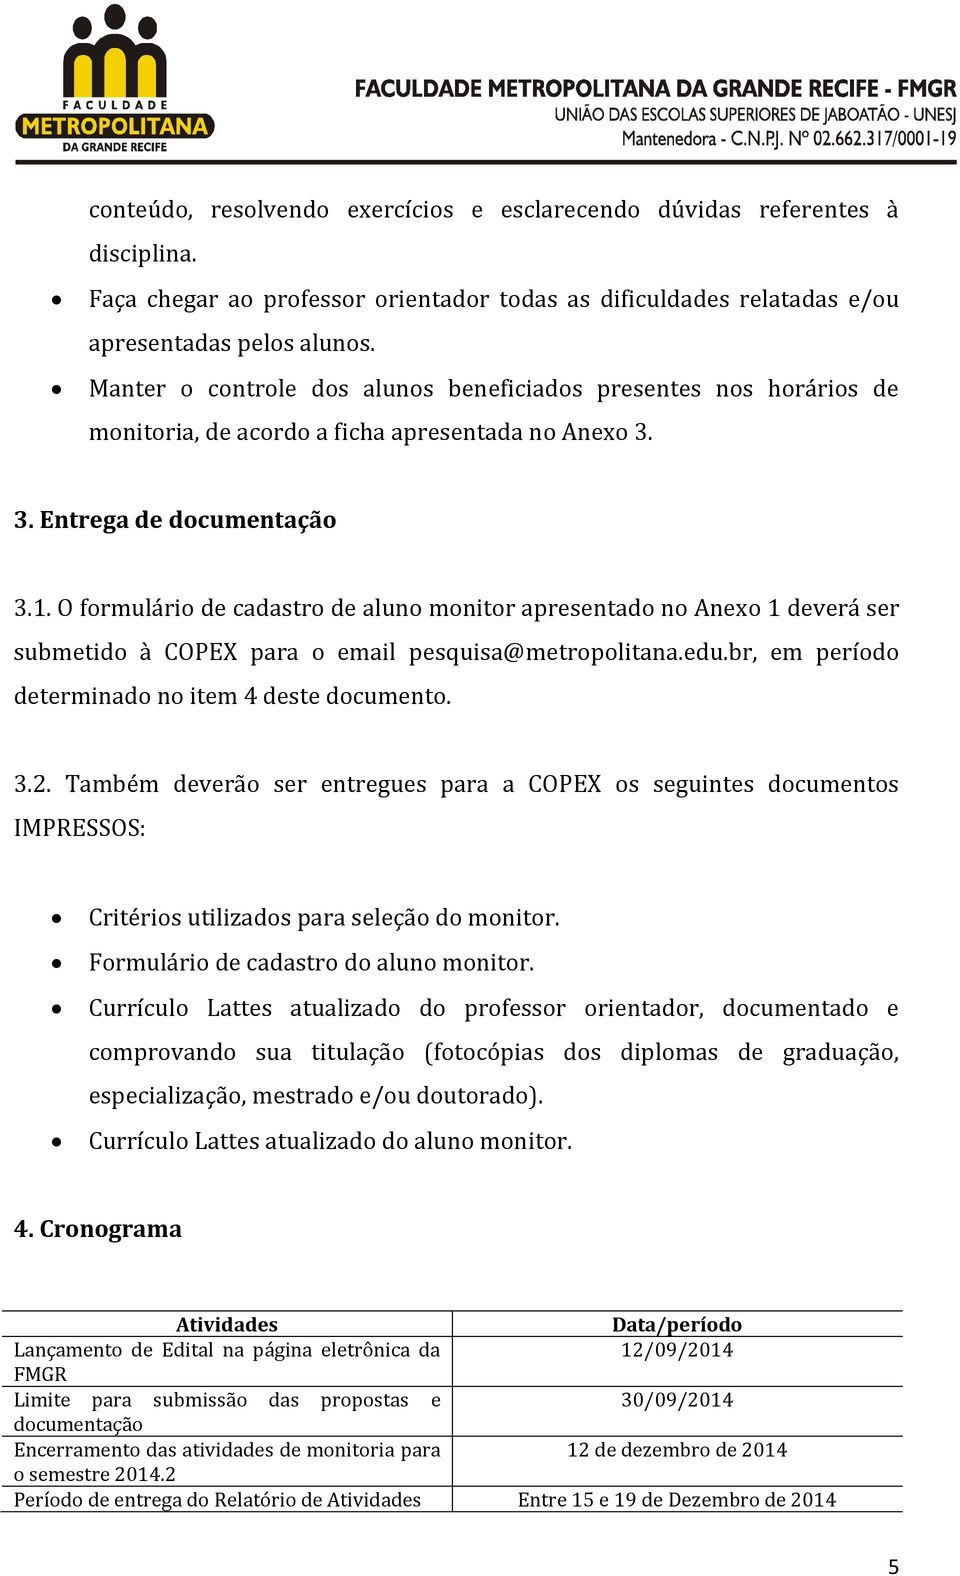 O formulário de cadastro de aluno monitor apresentado no Anexo 1 deverá ser submetido à COPEX para o email pesquisa@metropolitana.edu.br, em período determinado no item 4 deste documento. 3.2.